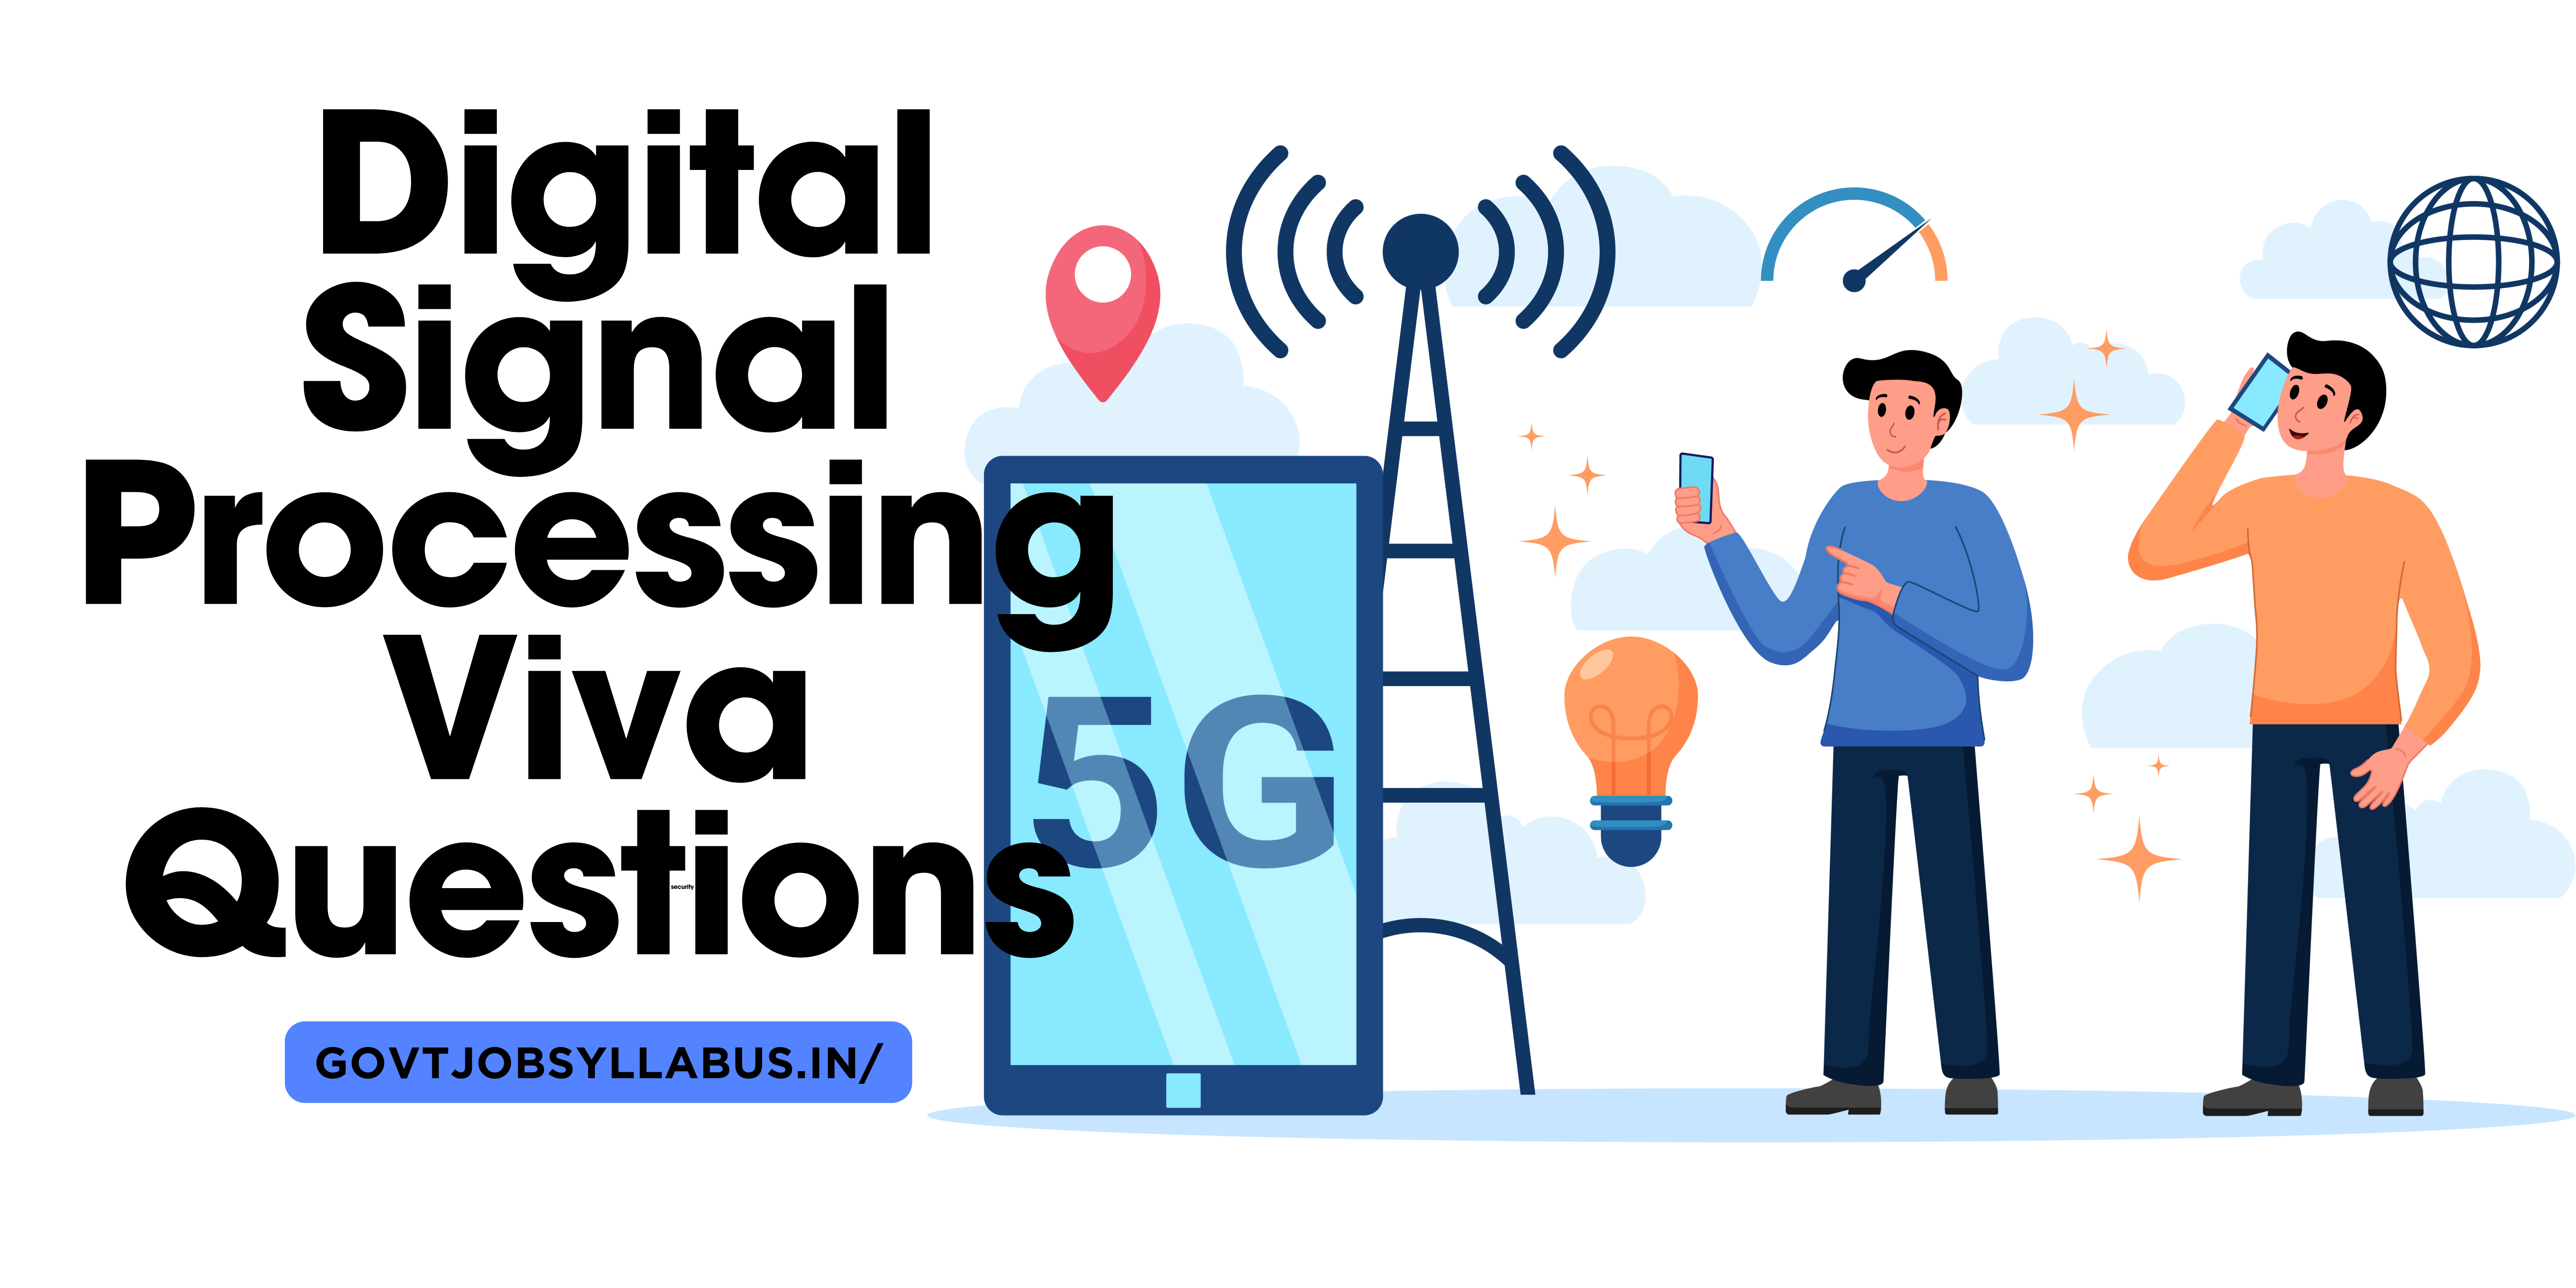 Digital Signal Processing Viva Questions